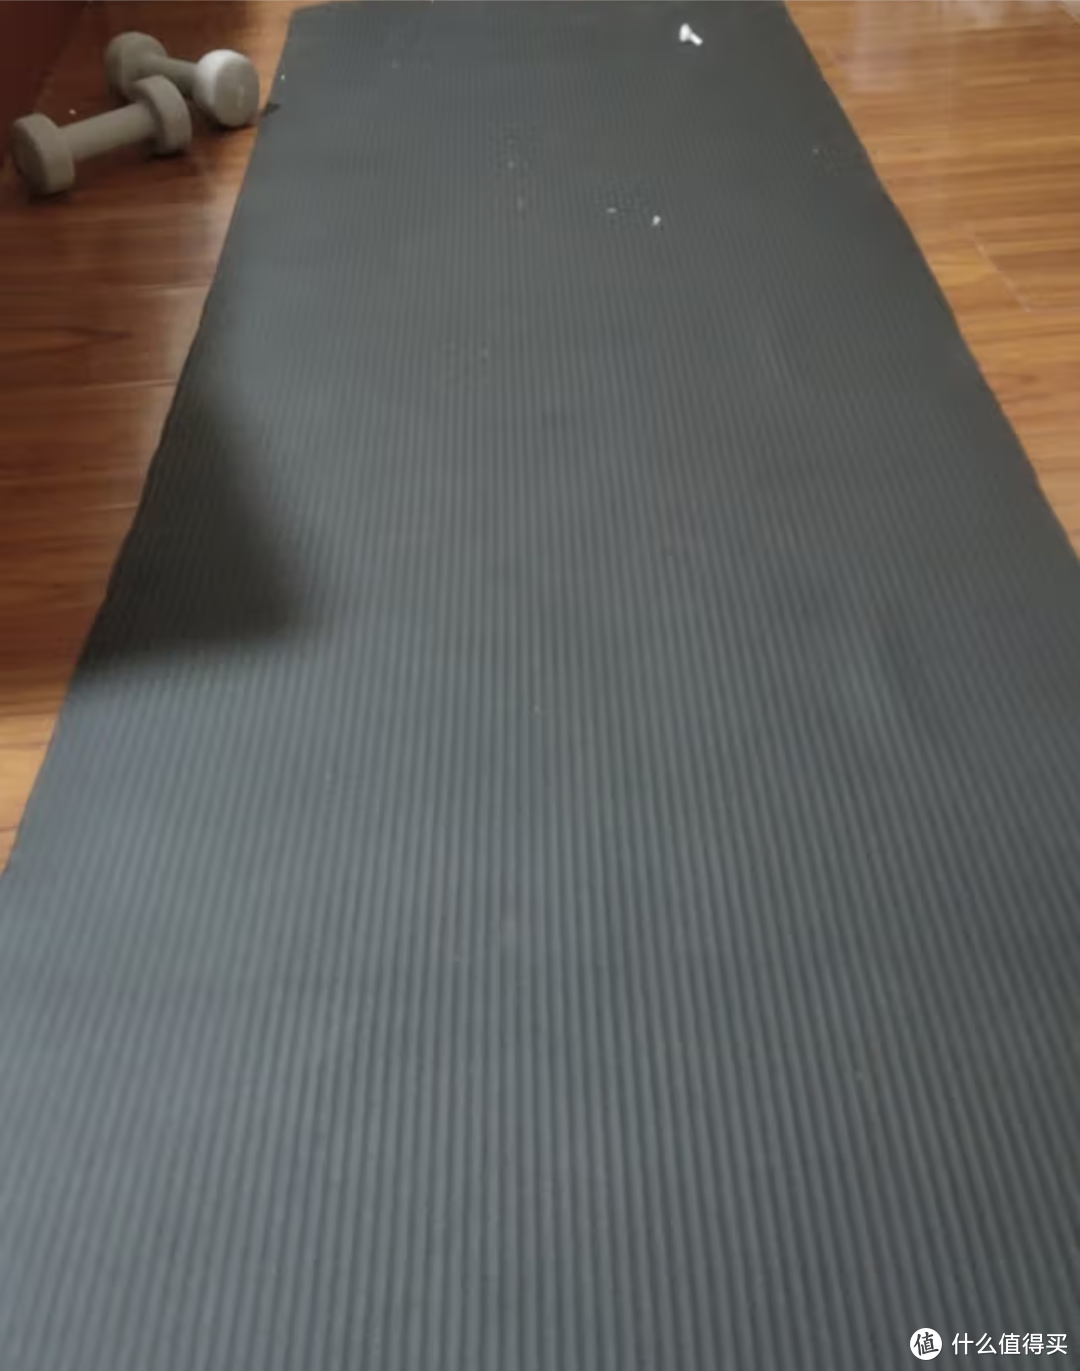 每天在家锻炼做俯卧撑和仰卧起坐的时候我都会在这个瑜伽垫上面锻炼